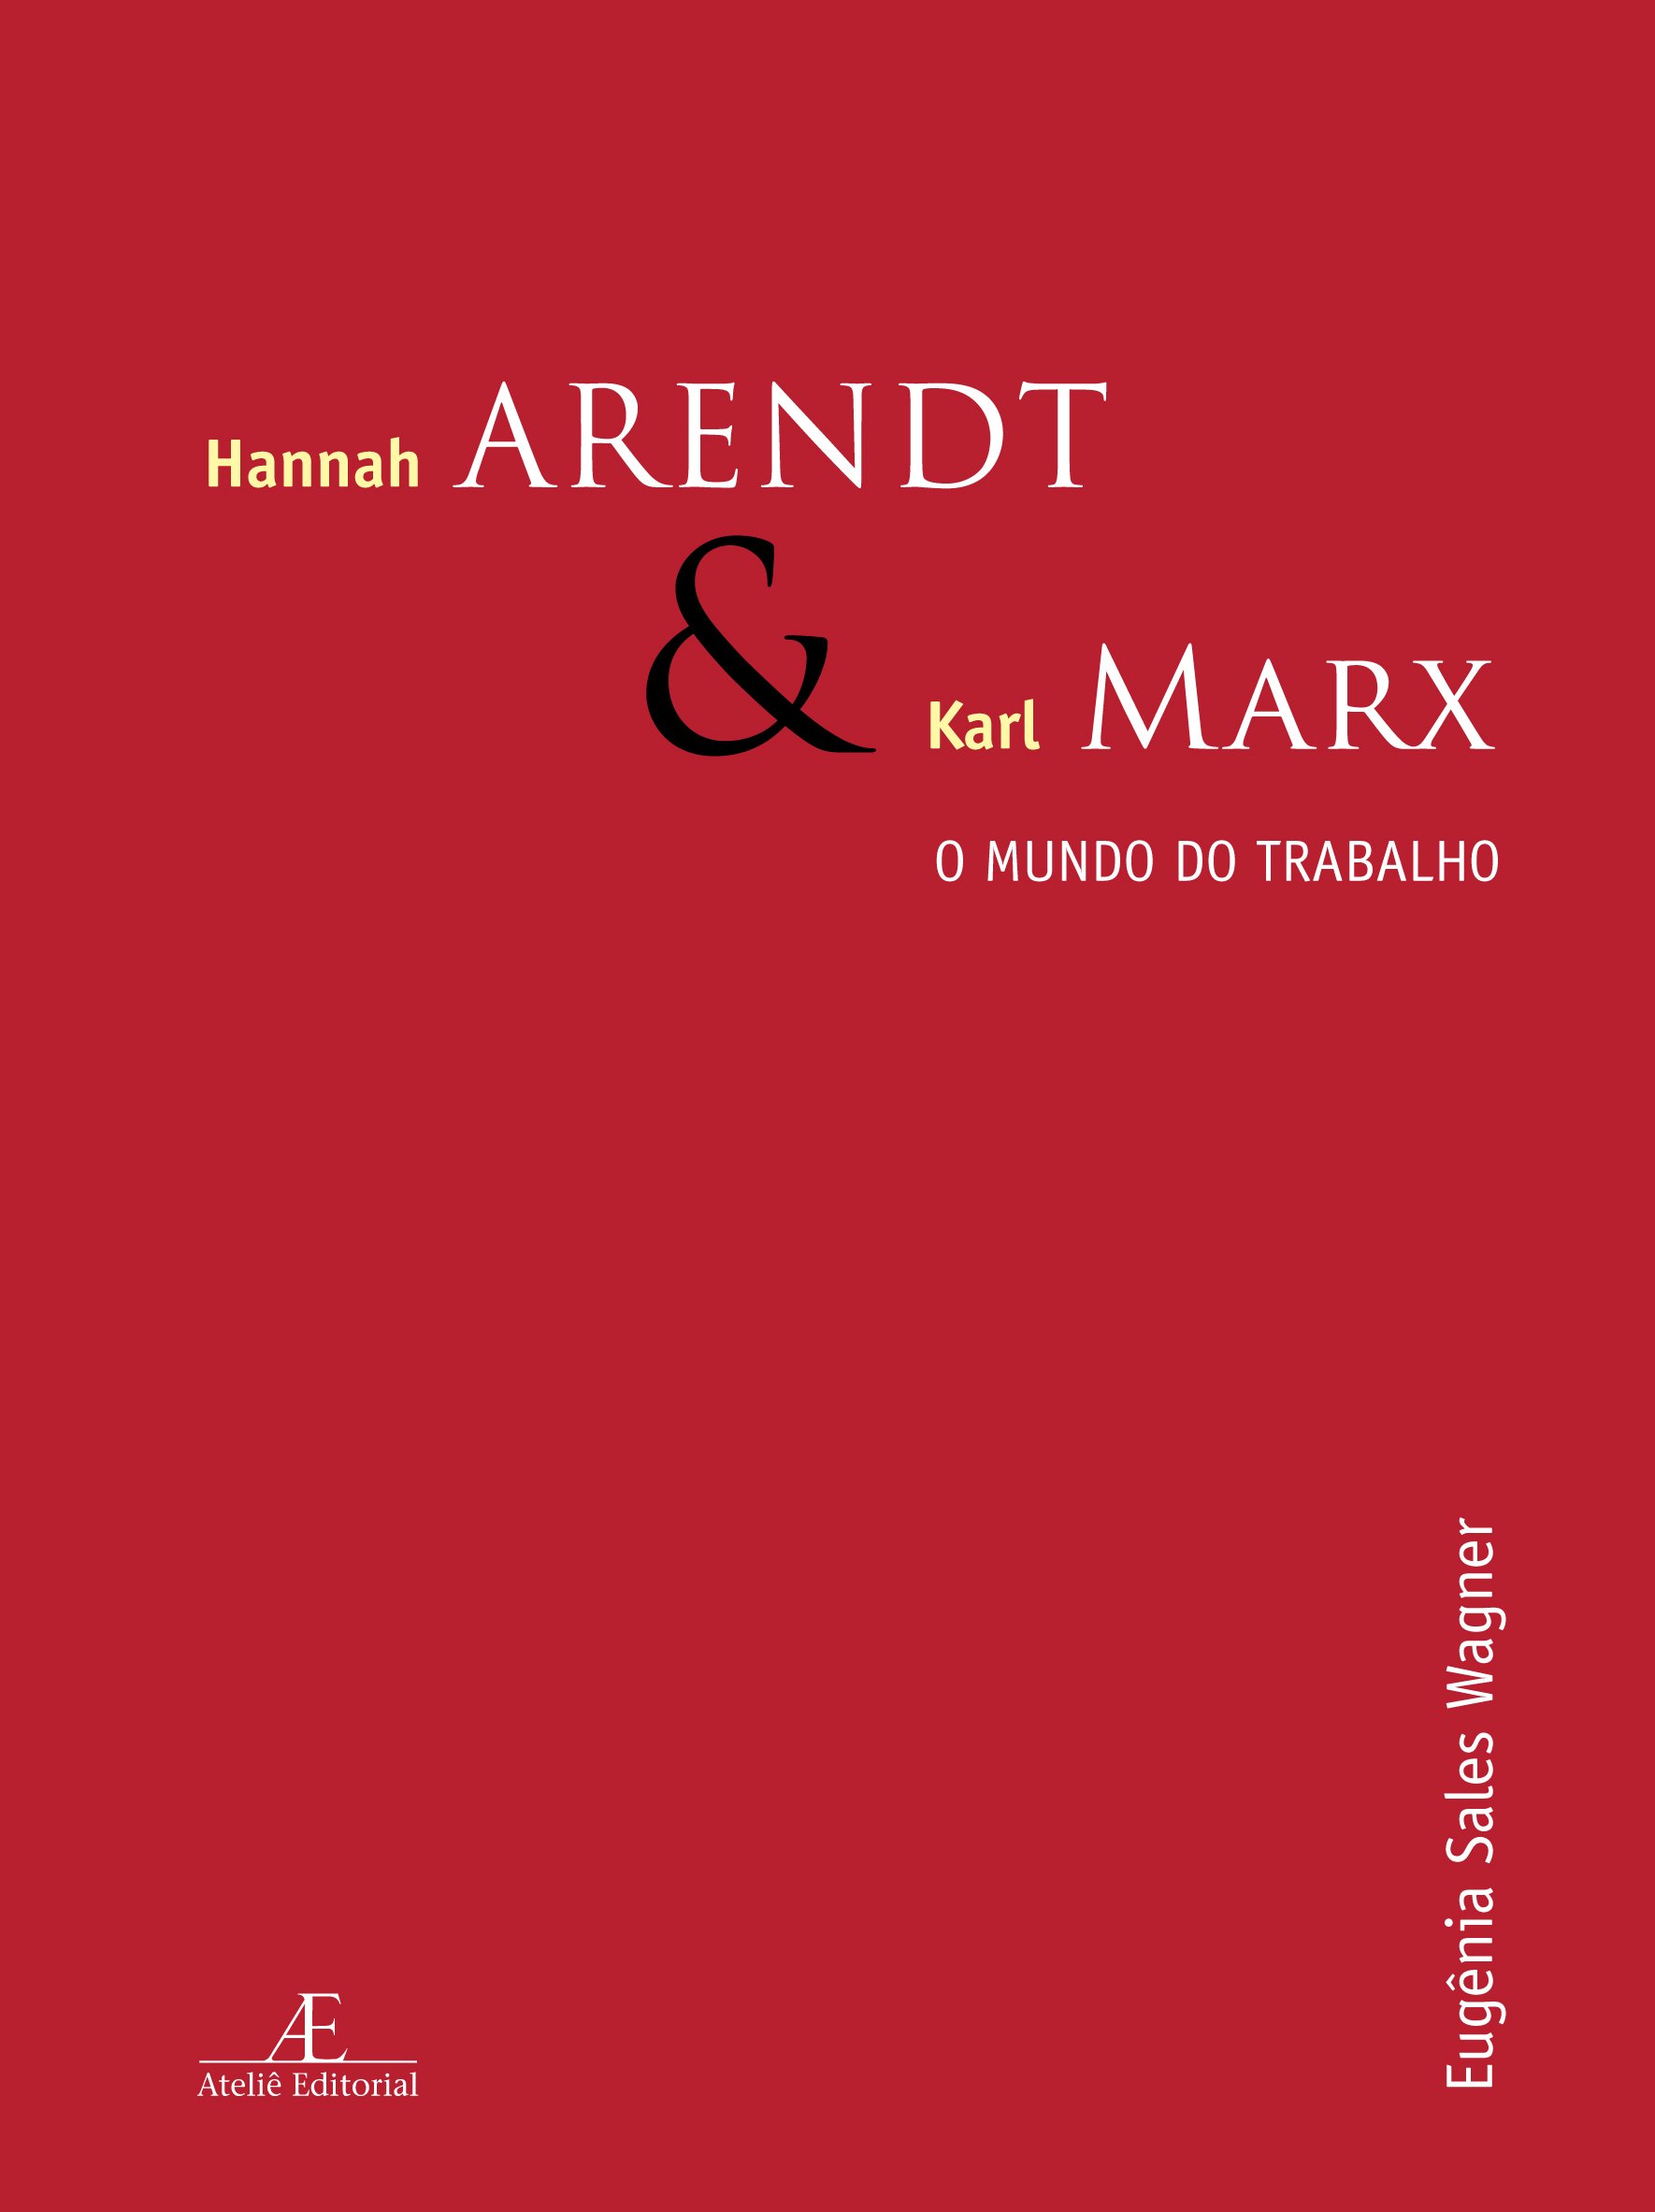 Hannah Arendt e Karl Marx - O Mundo do Trabalho, livro de Eugenia Sales Wagner